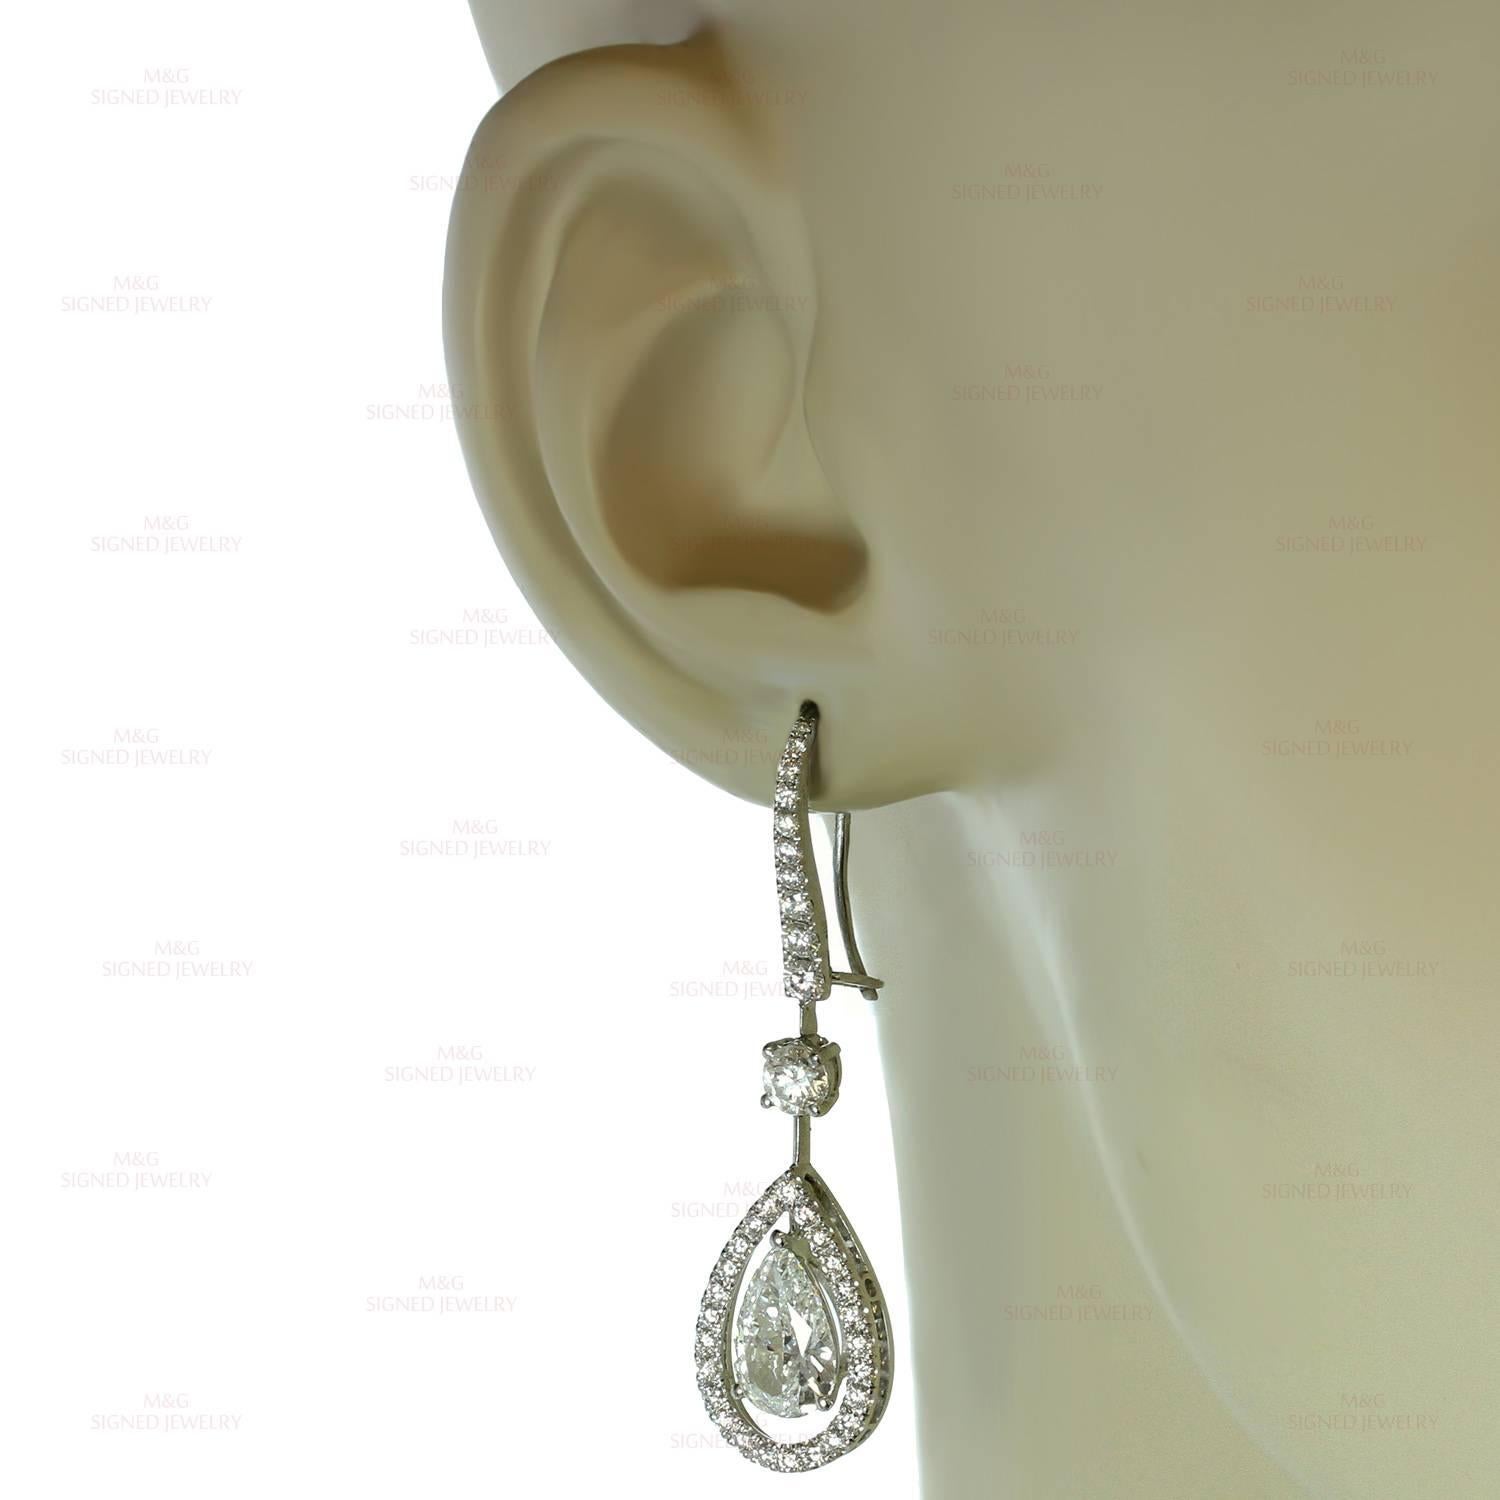 graff diamond earrings